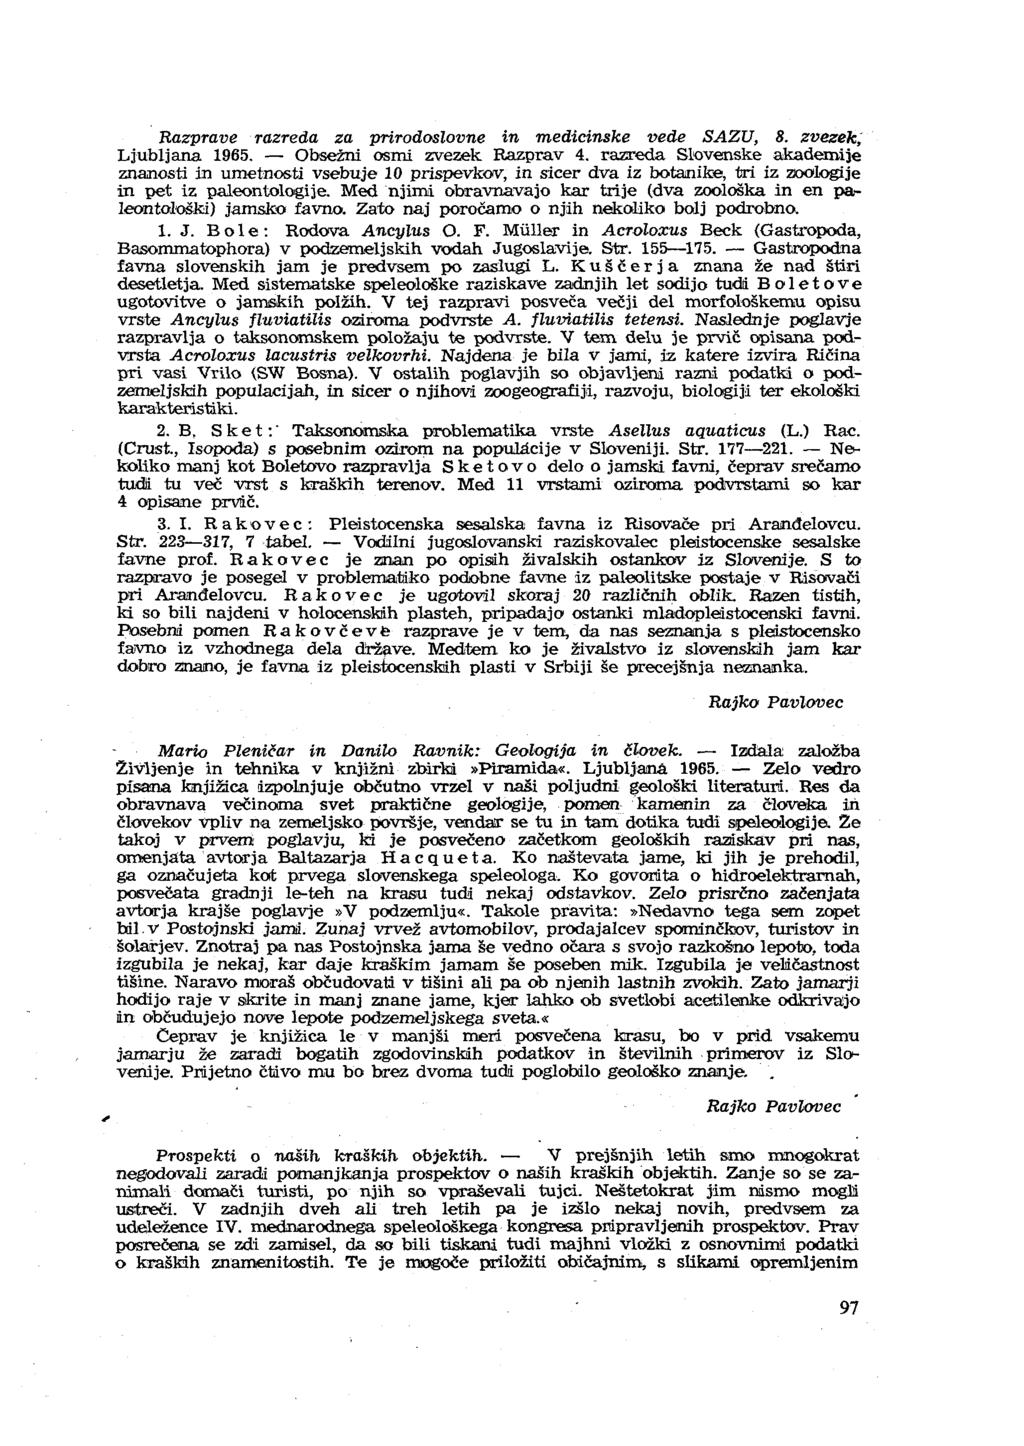 Razprave razreda za prirodoslovne in medicinske vede SAZU, 8. zvezek; Ljubljana 1965. - Obsežni osmi zvezek Razprav 4.